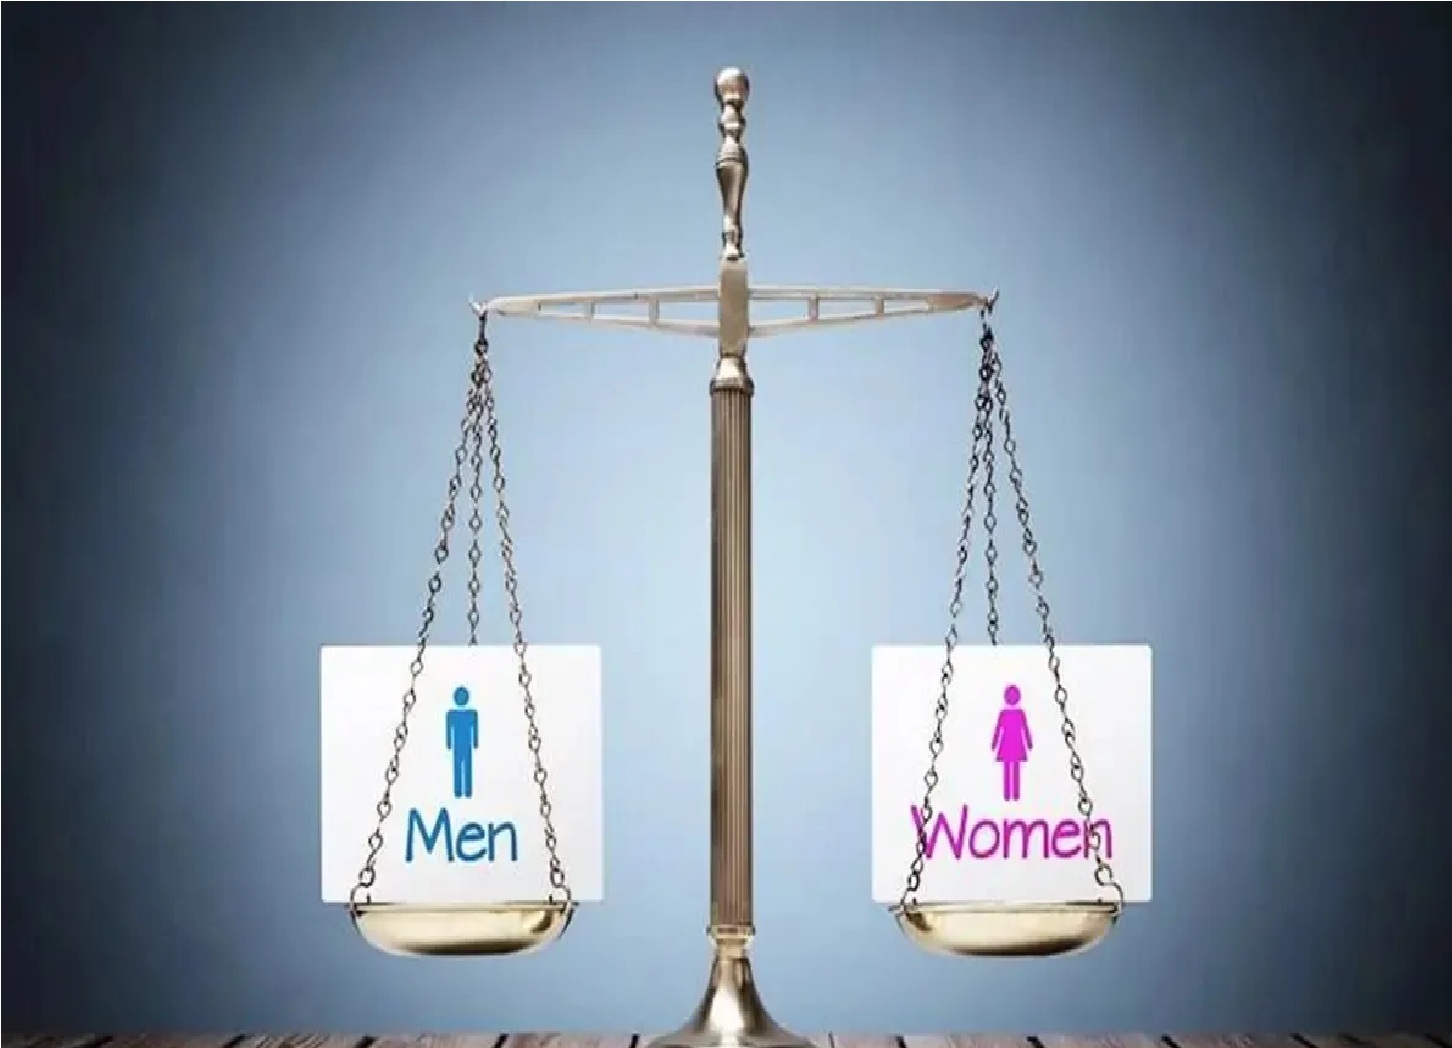 New Delhi: भारत में लैंगिक असमानता पर अच्छी खबर, विश्व बैंक की रिपोर्ट में पुरुषों की तुलना में महिलाओं के वेतन पर चौंकाने वाले आंकड़े